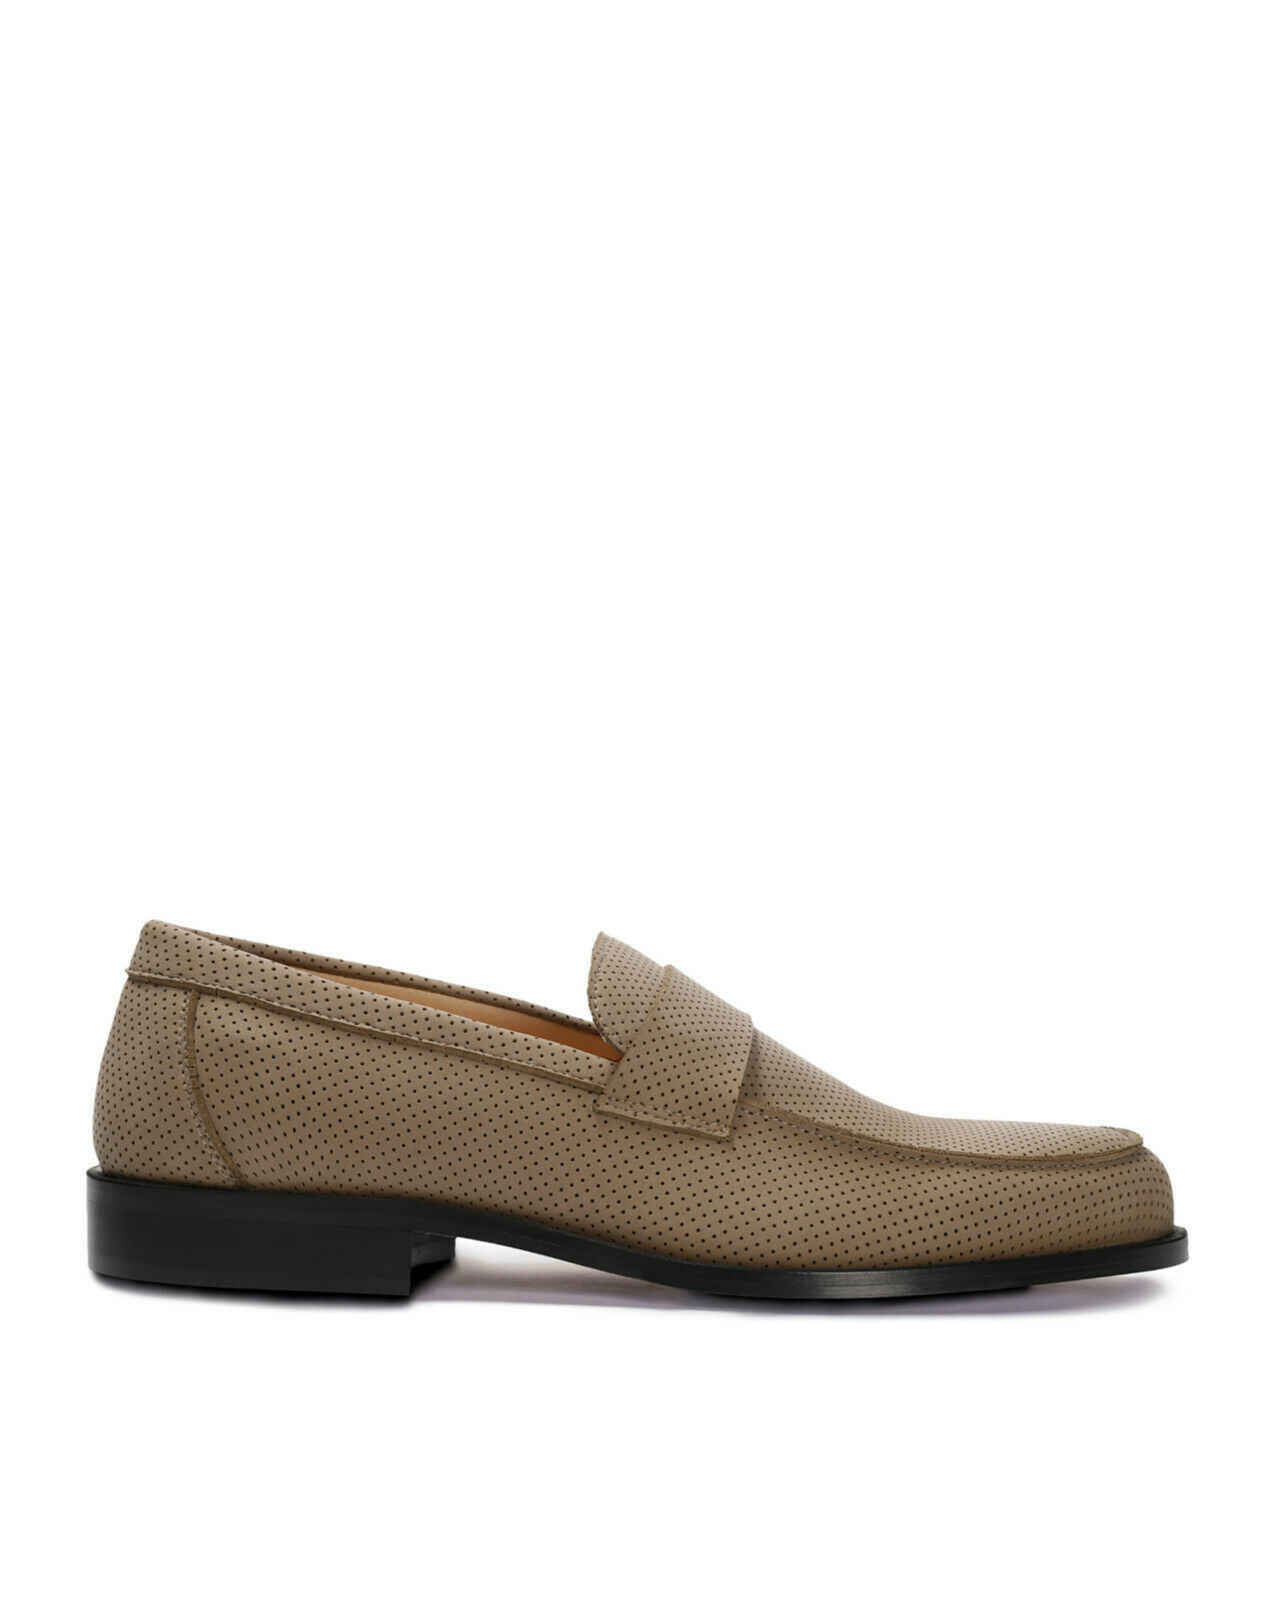 Zapato vegano loafer mocasín elegante y casual con forro confort transpirable